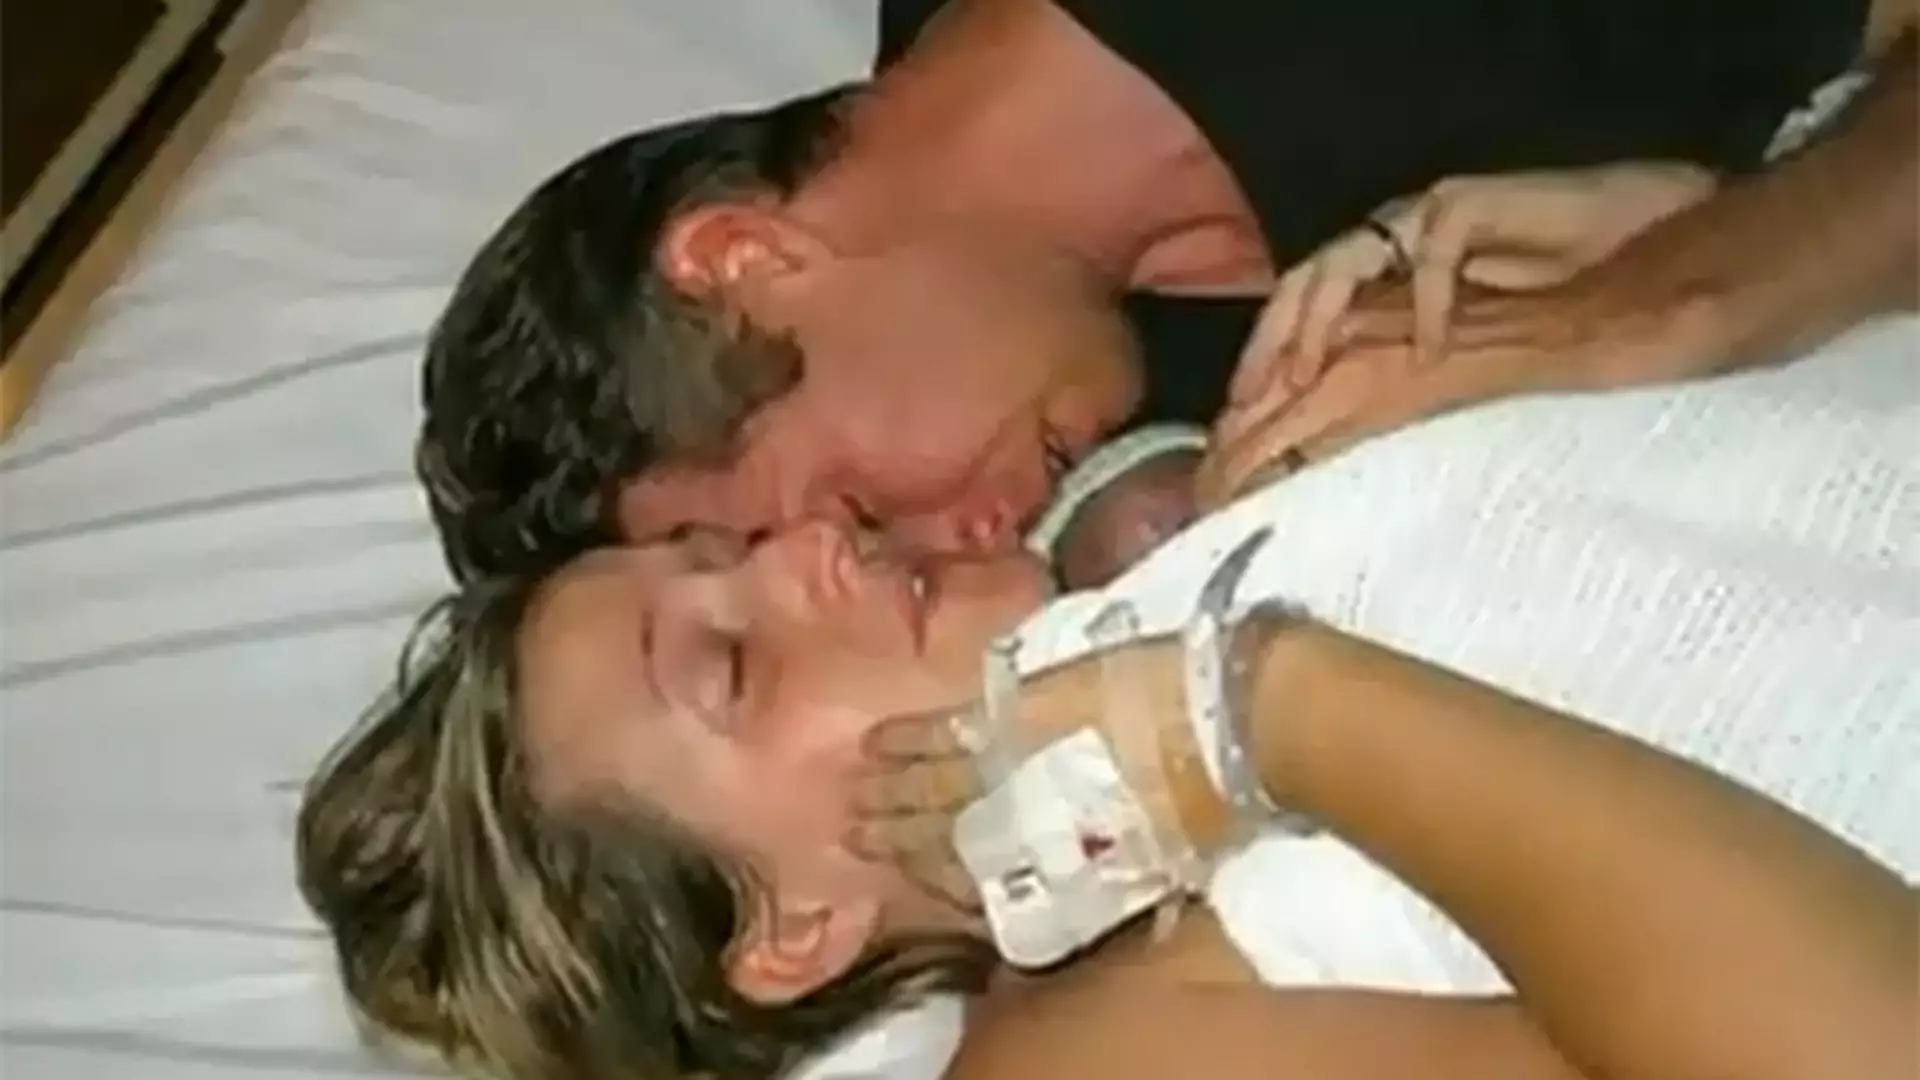 Dziecko ożywa w ramionach matki! Małego Jamiego uratowała (dosłownie) matczyna miłość. NIEZWYKŁA historia!